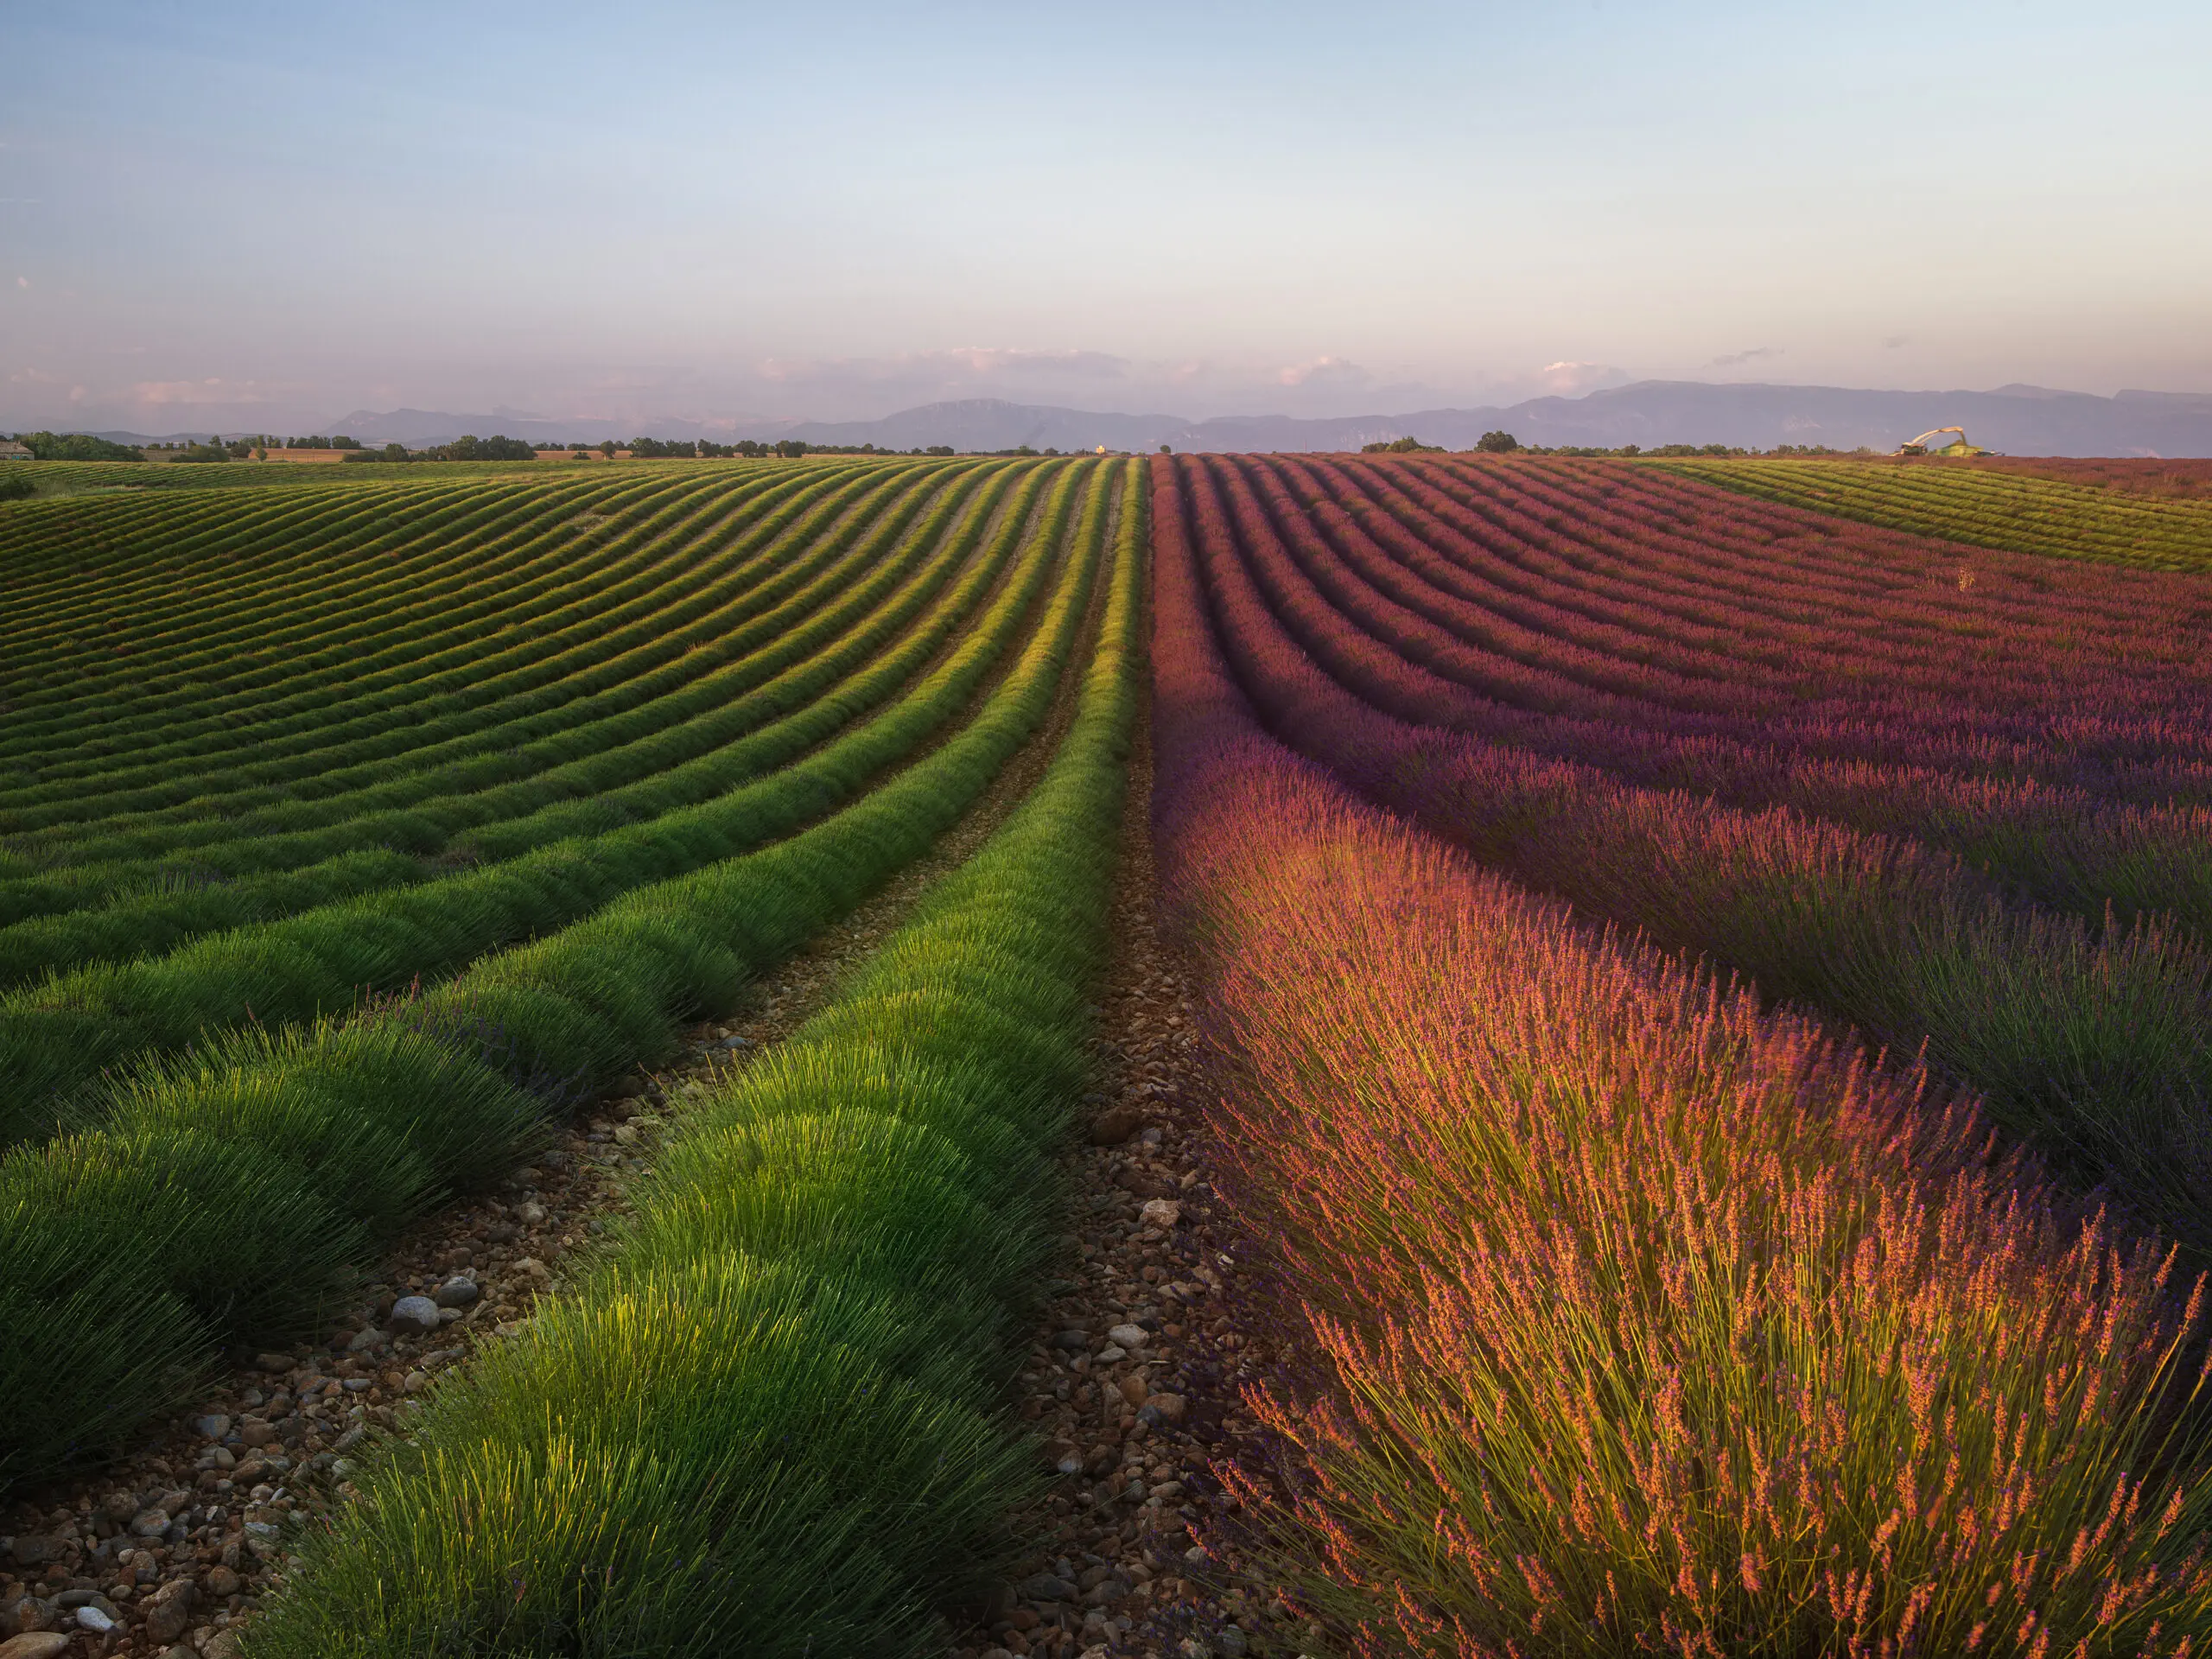 Wandbild (6140) Field of Lavender by R. Anton, 1x.com präsentiert: Natur,Landschaften,Blumen und Blüten,Sommer,Wege